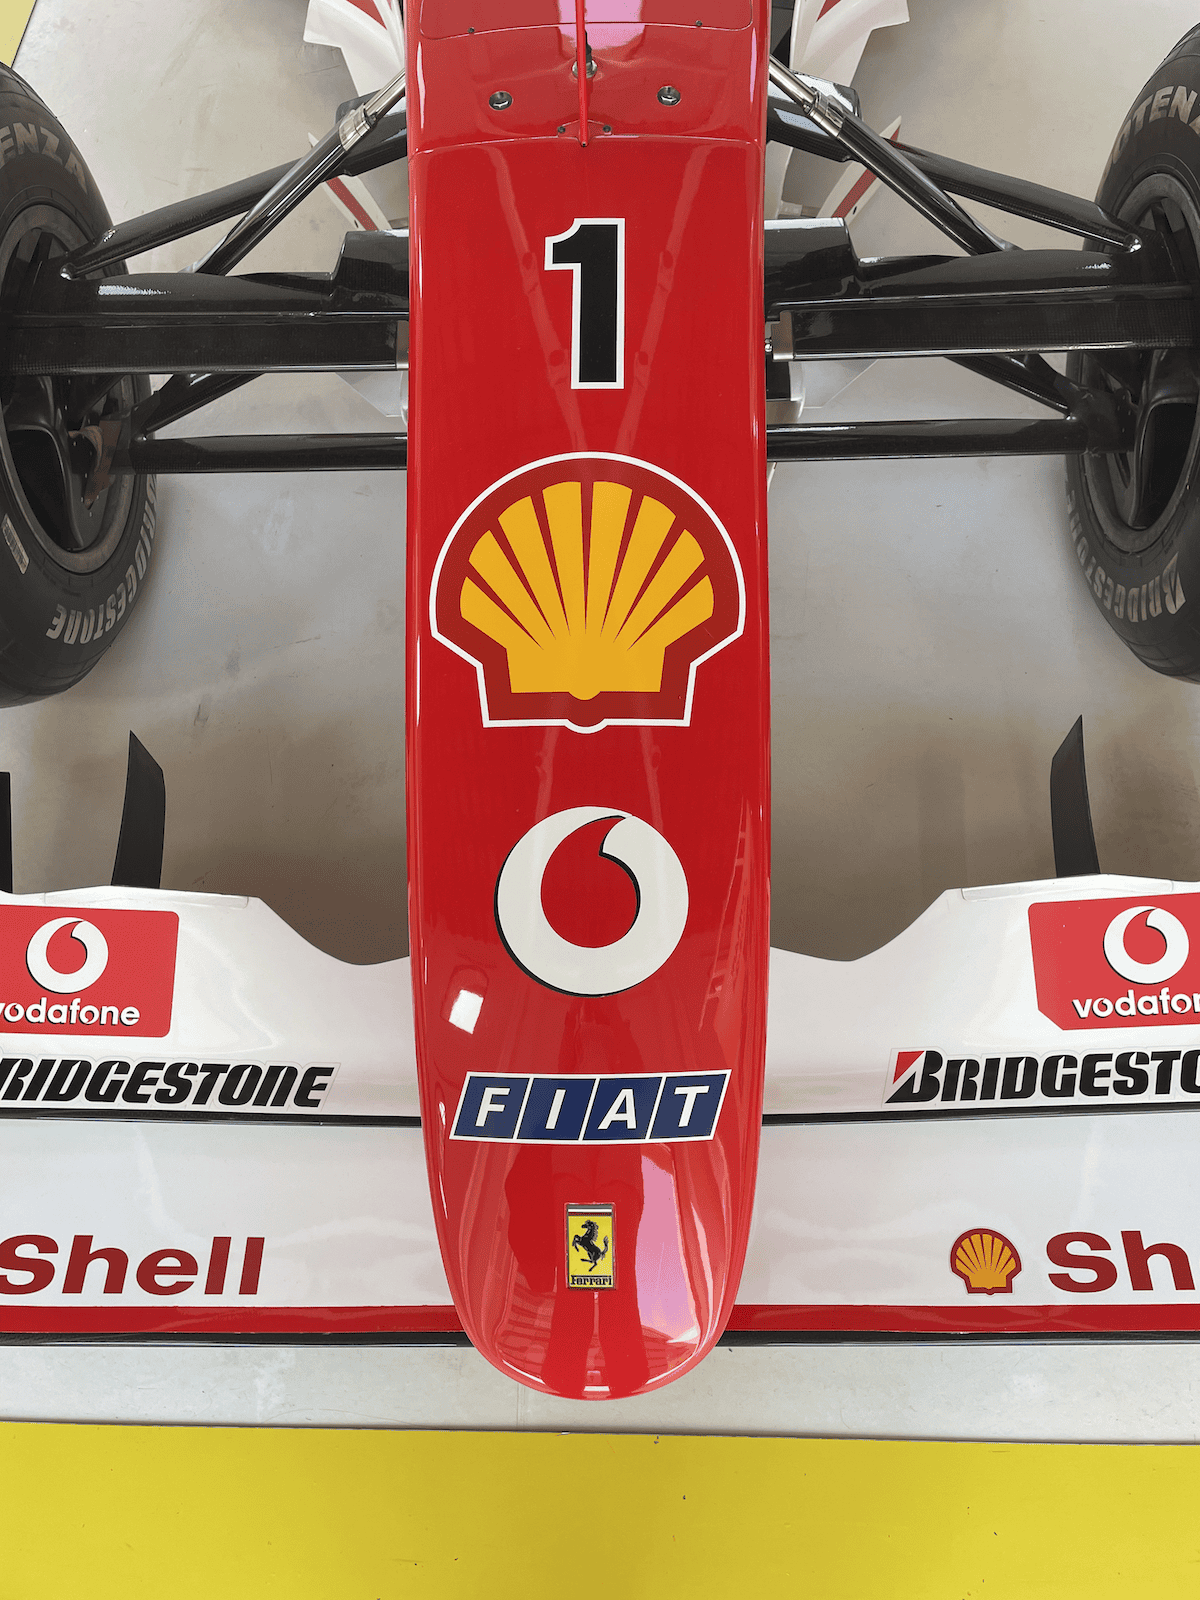 the nose of a Ferrari F1 car